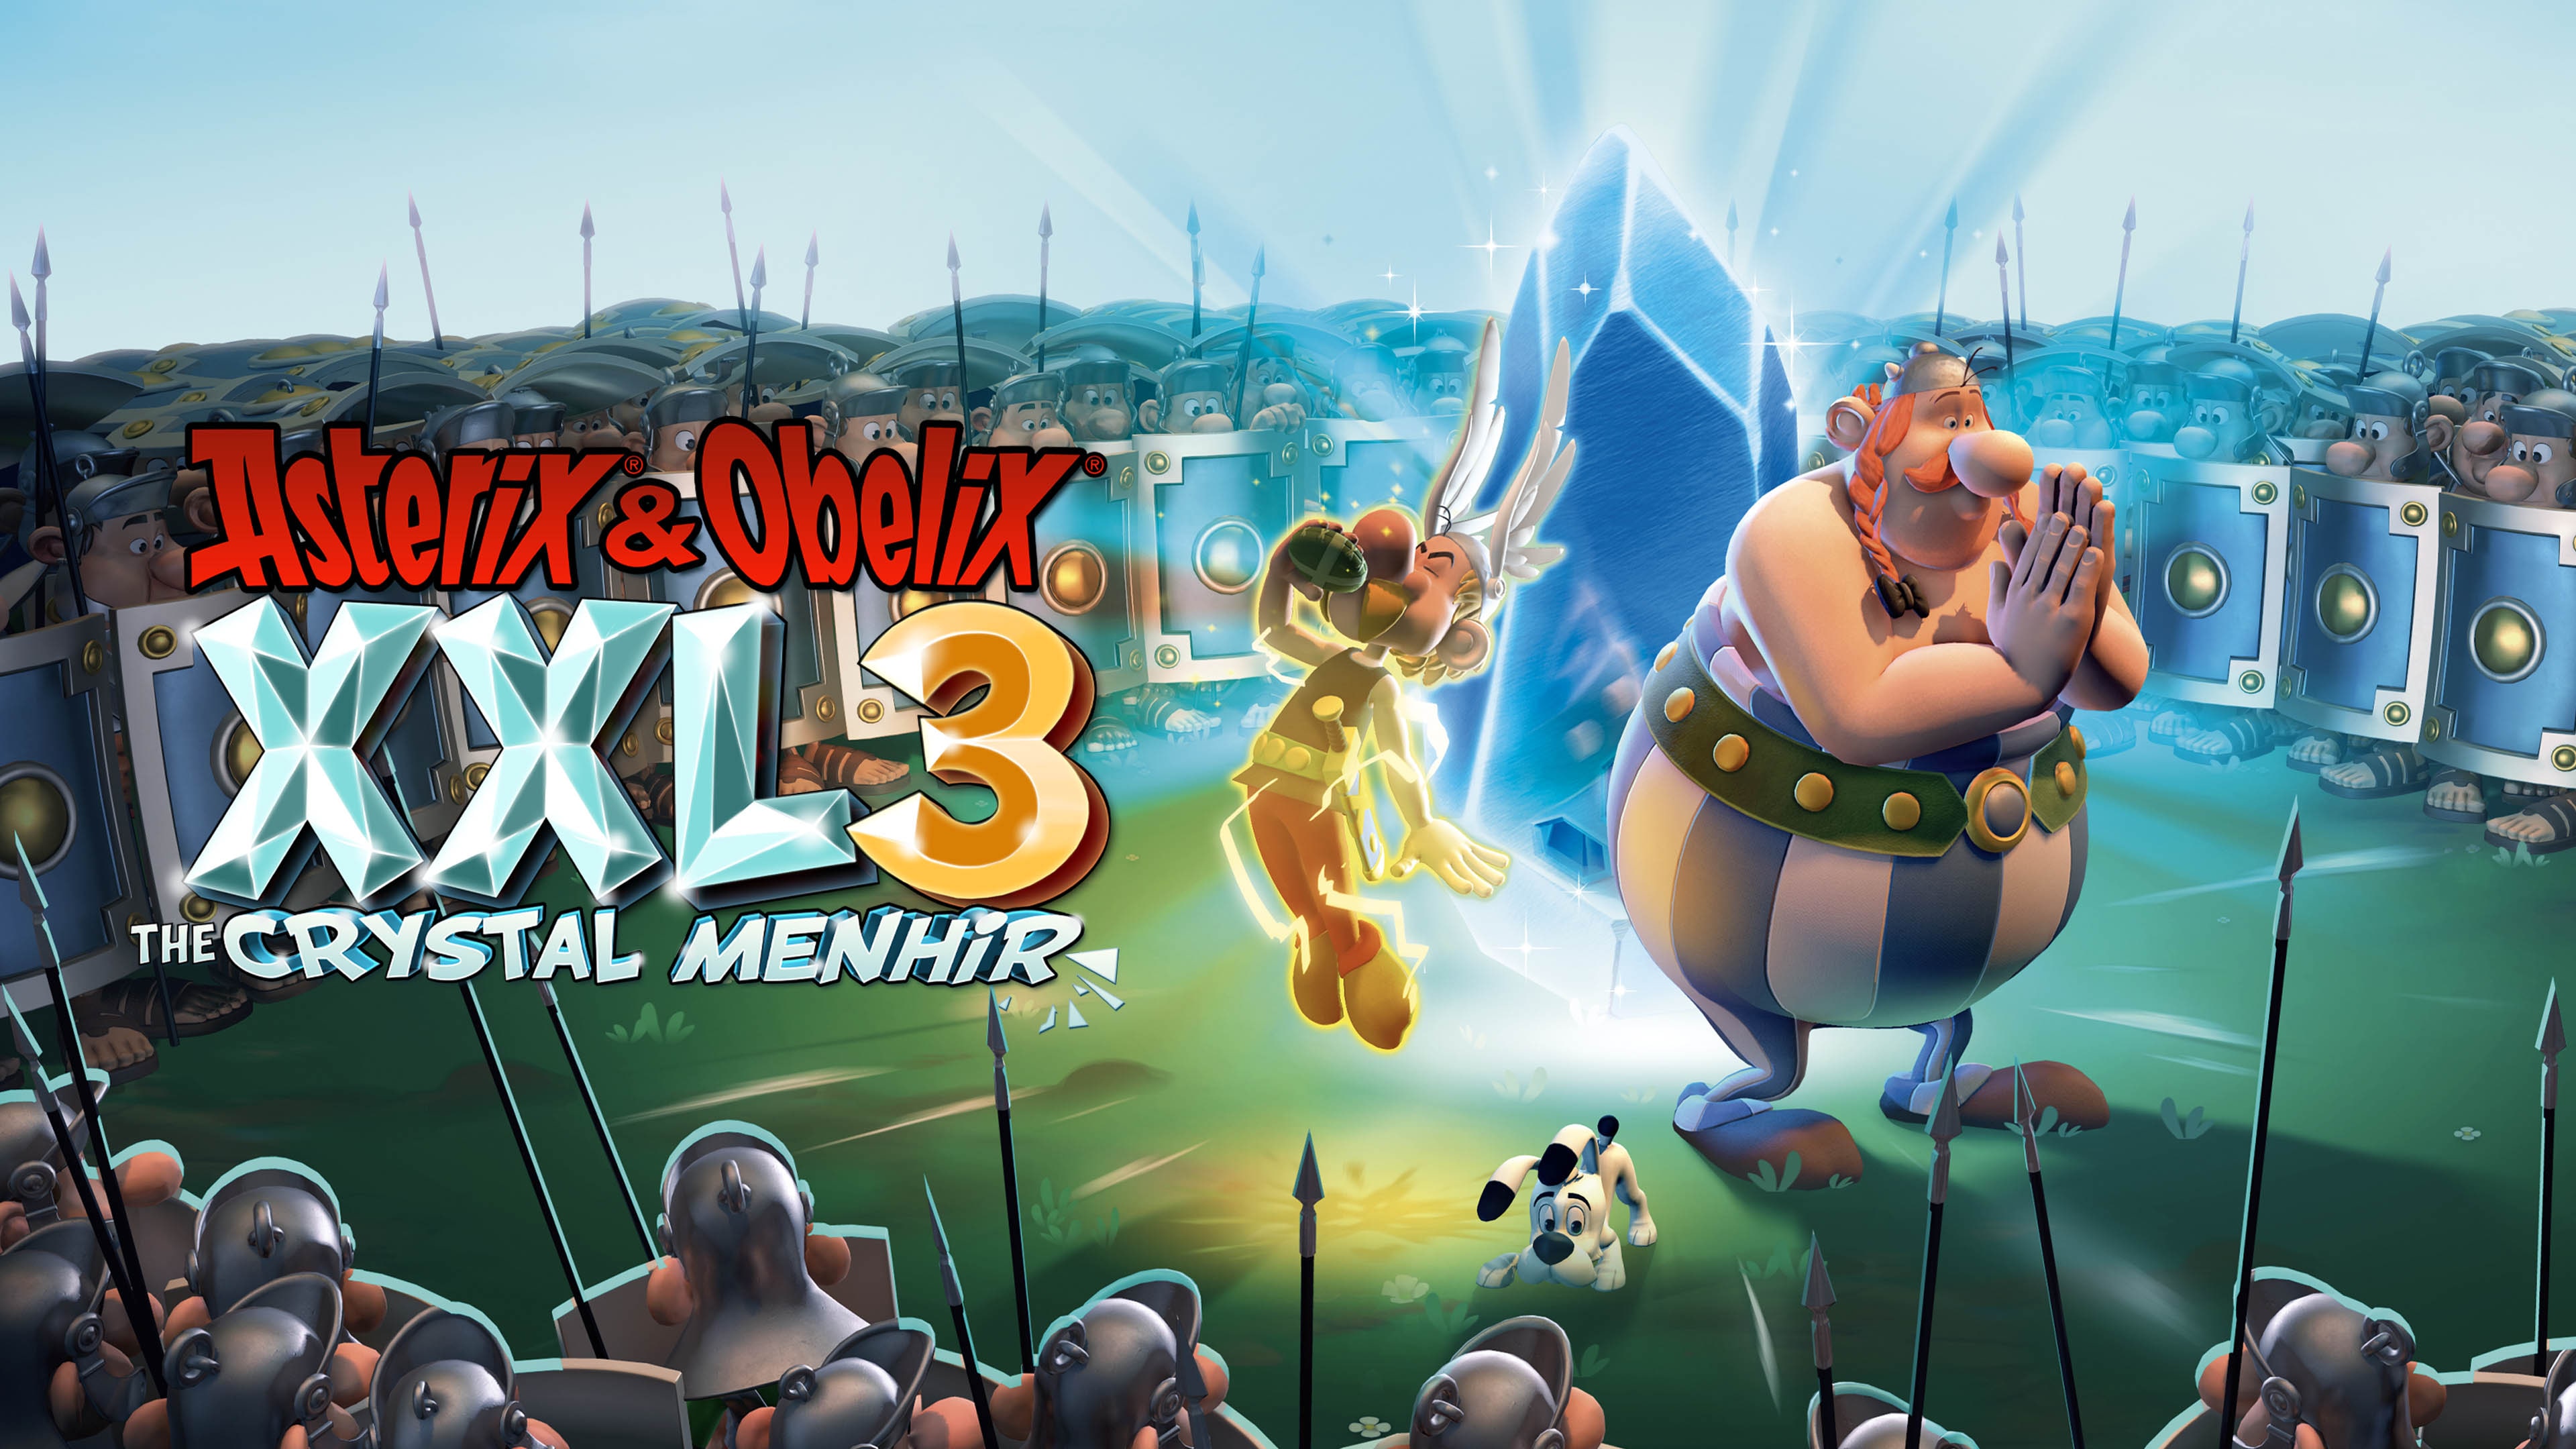 & Obelix XXL3: Crystal Menhir